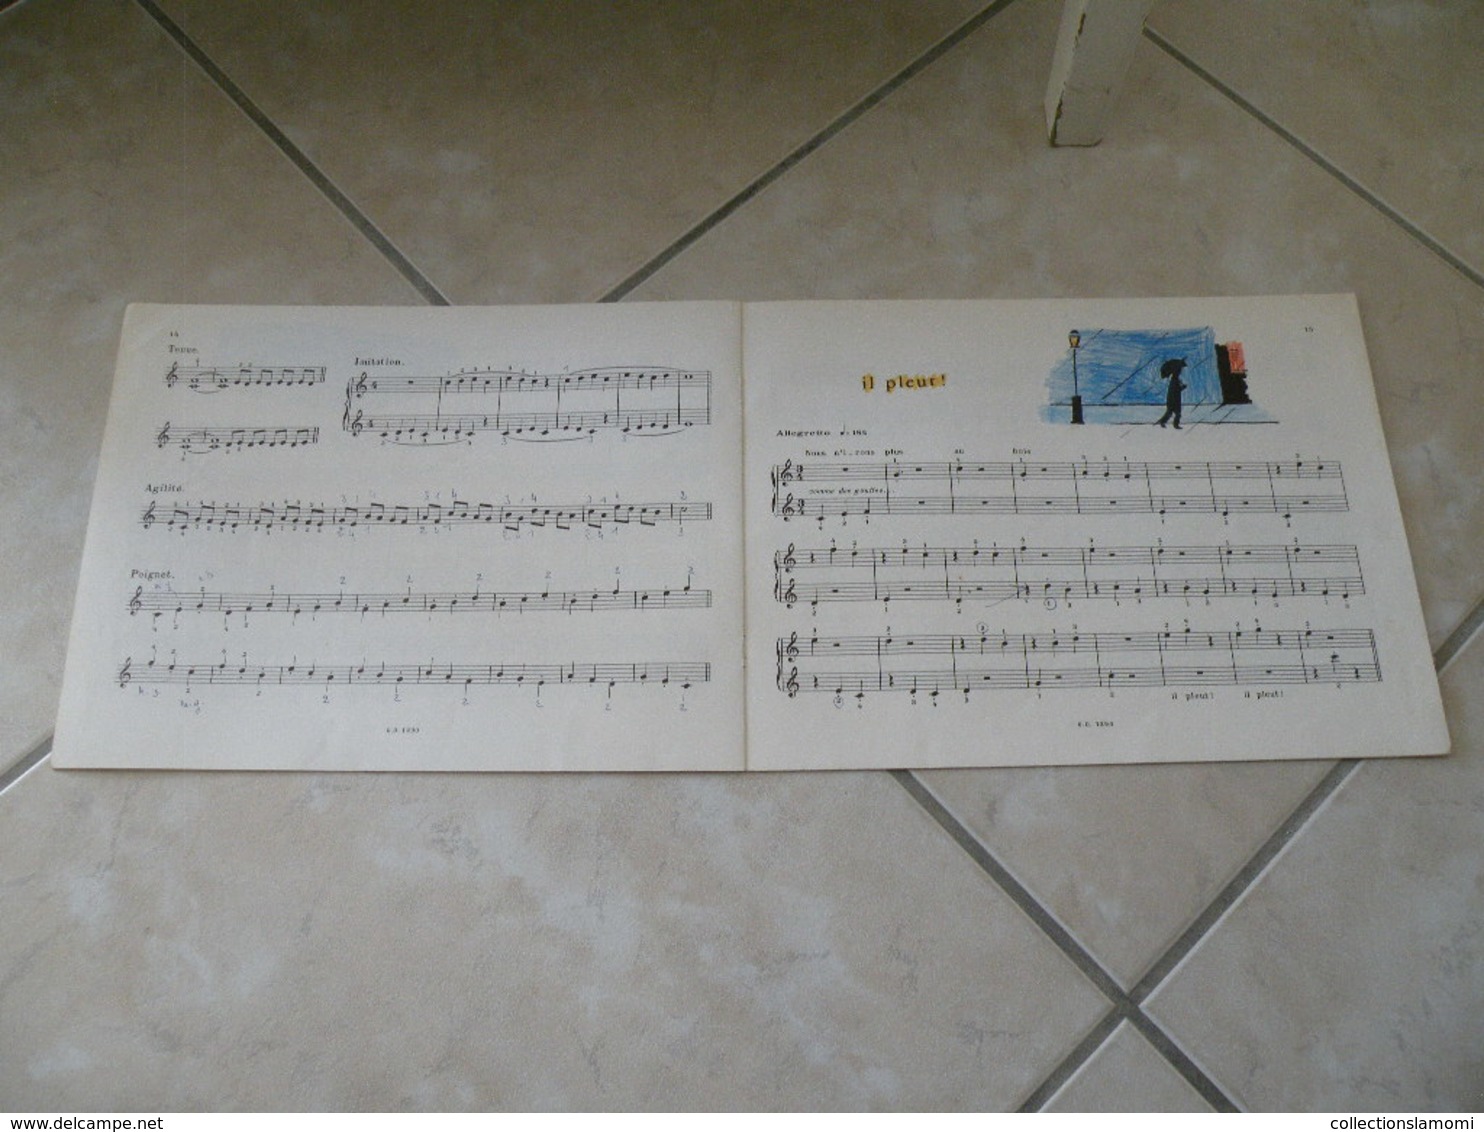 L'Enfant au clavier, méthode de piano illustrée - Musique (2)